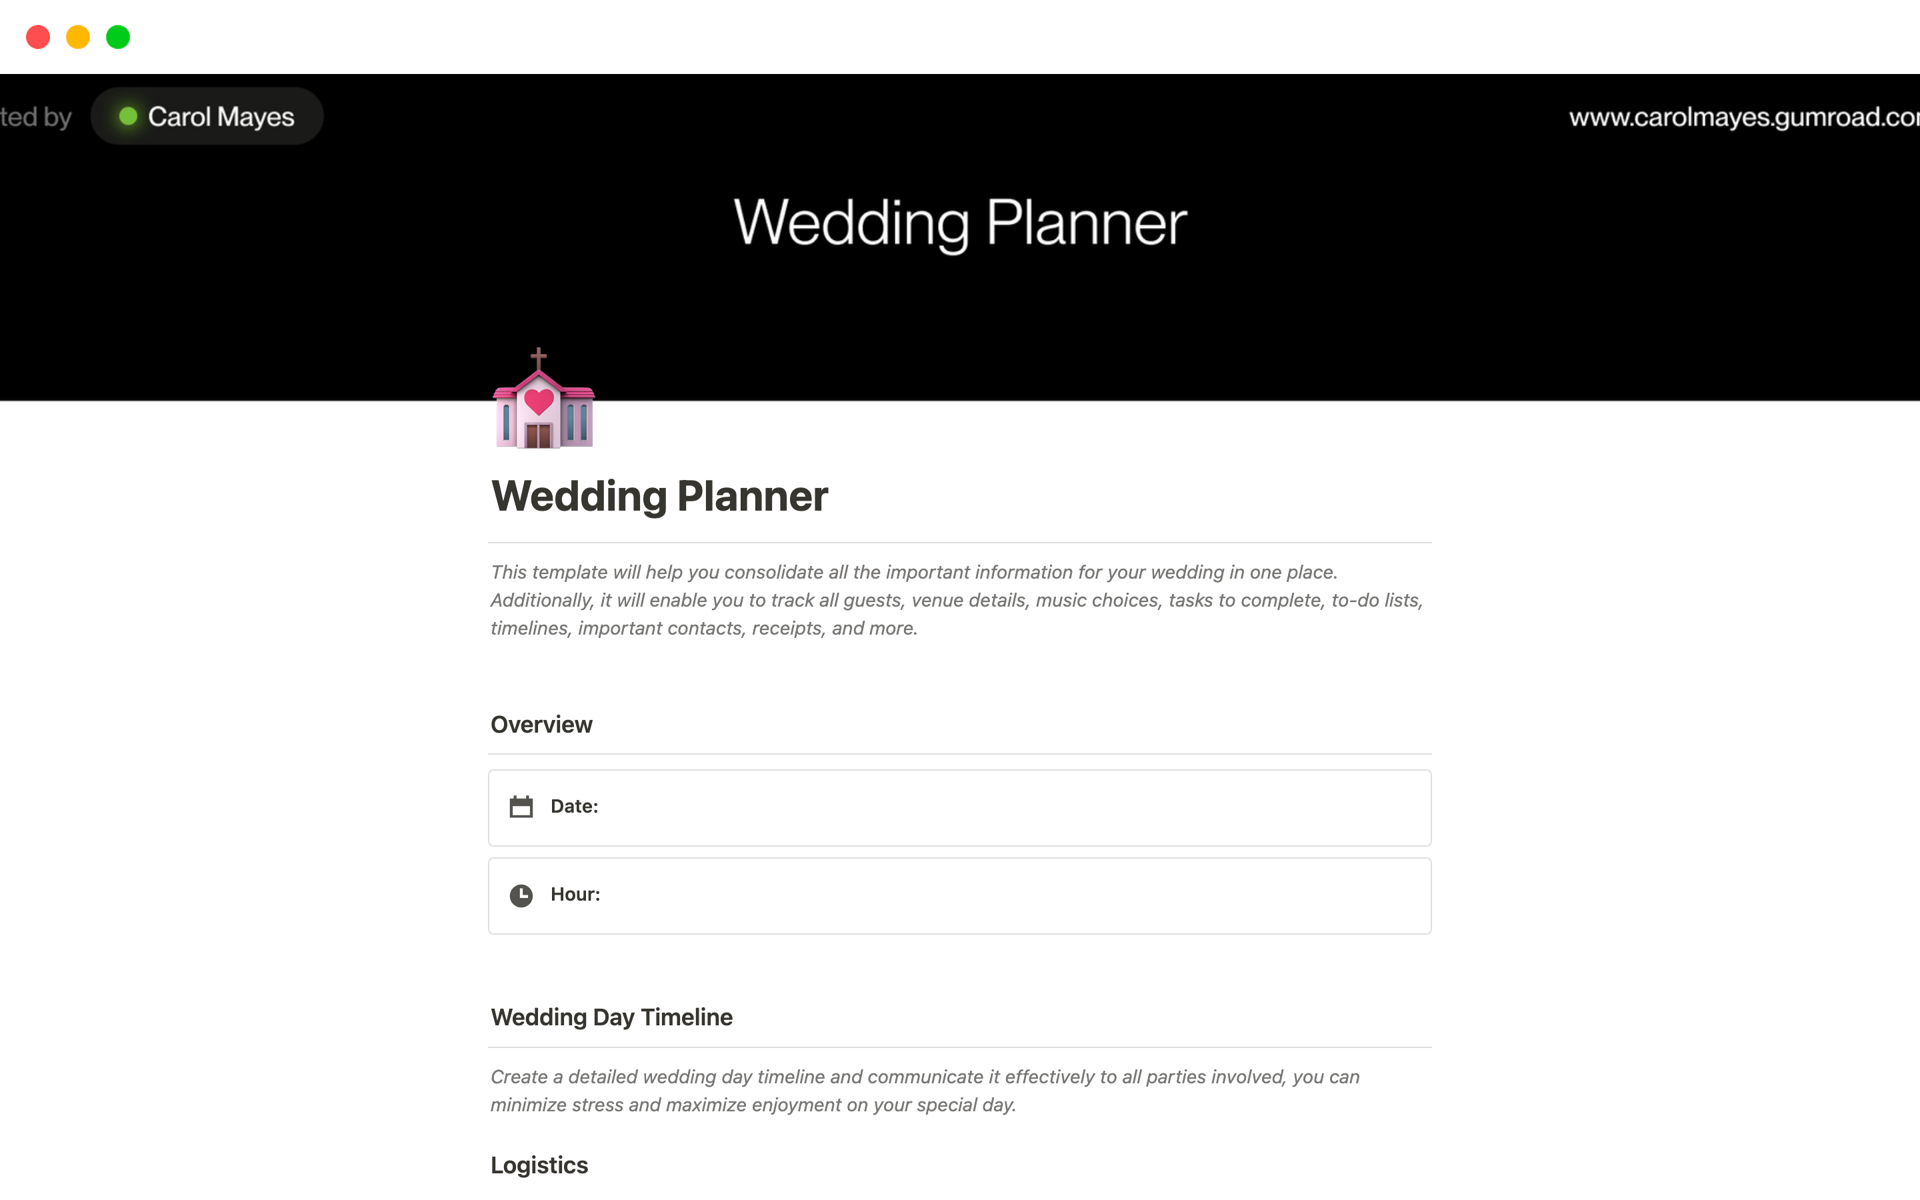 Aperçu du modèle de Wedding Planner